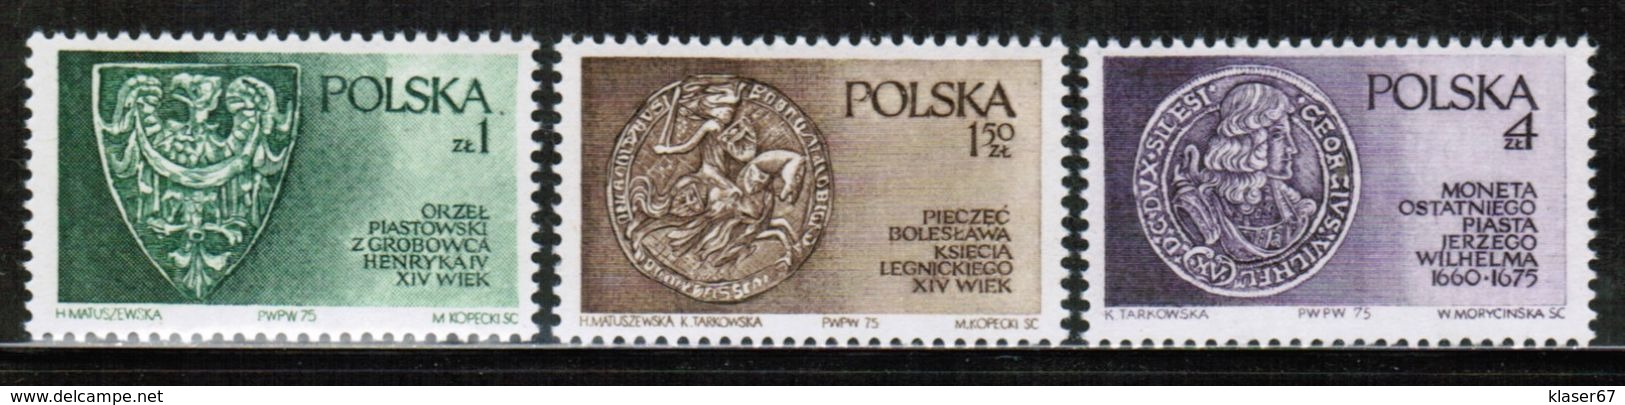 PL 1975 MI 2416-18 - Unused Stamps